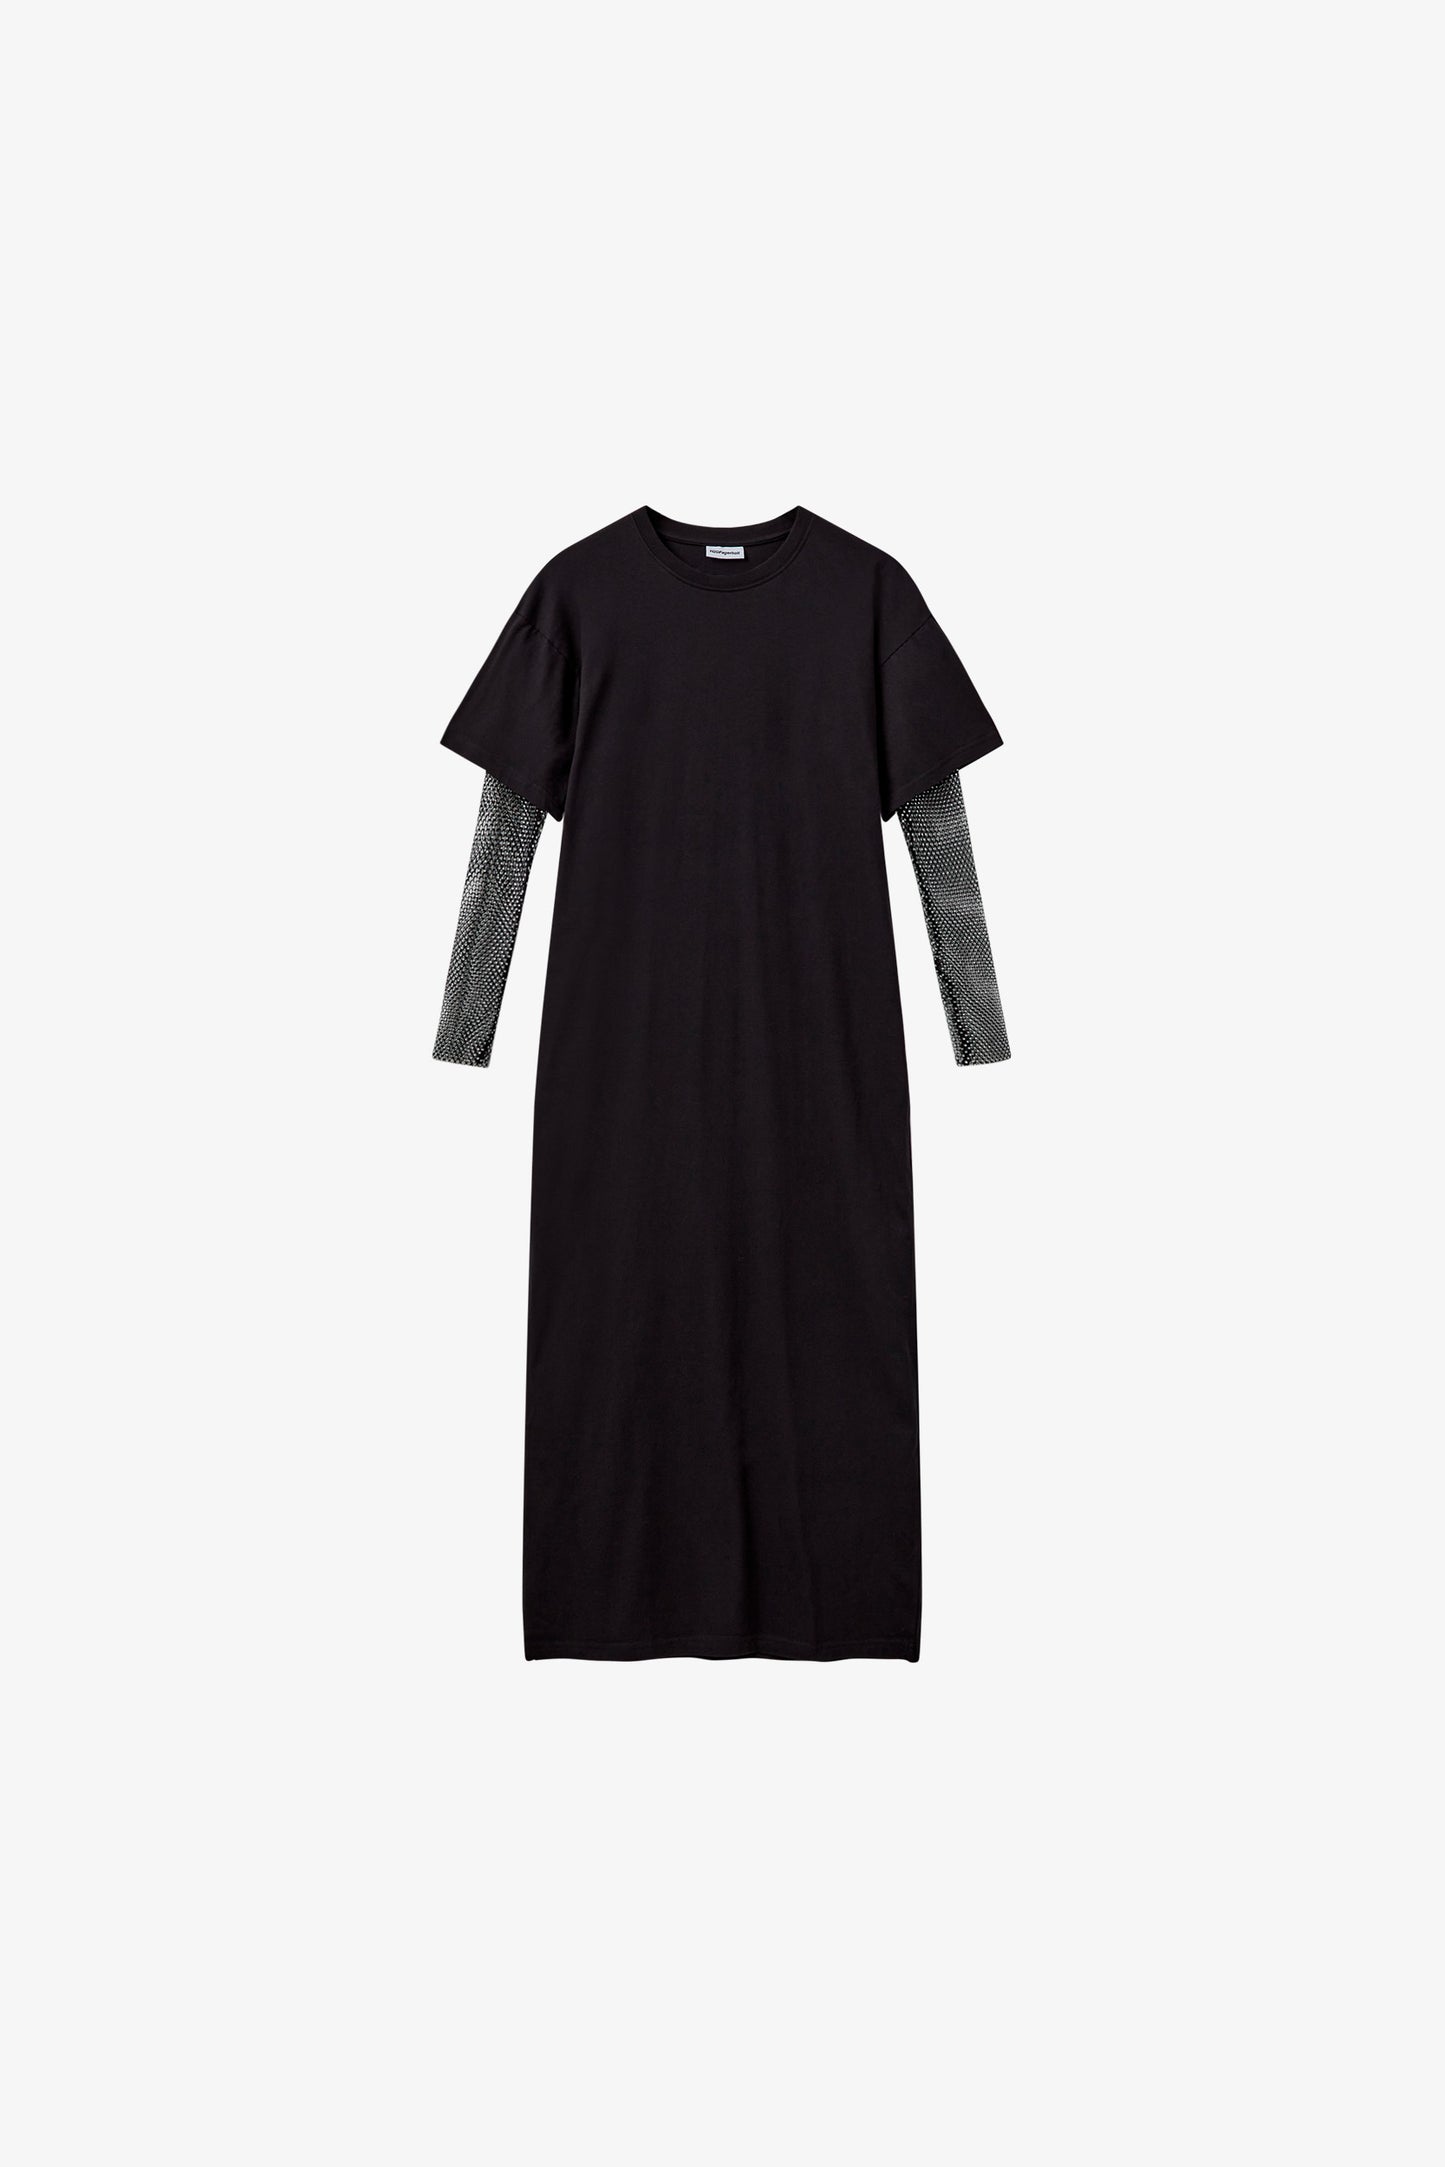 H2OFagerholt Bex T-shirt Dress Dress 3501 Deep Black